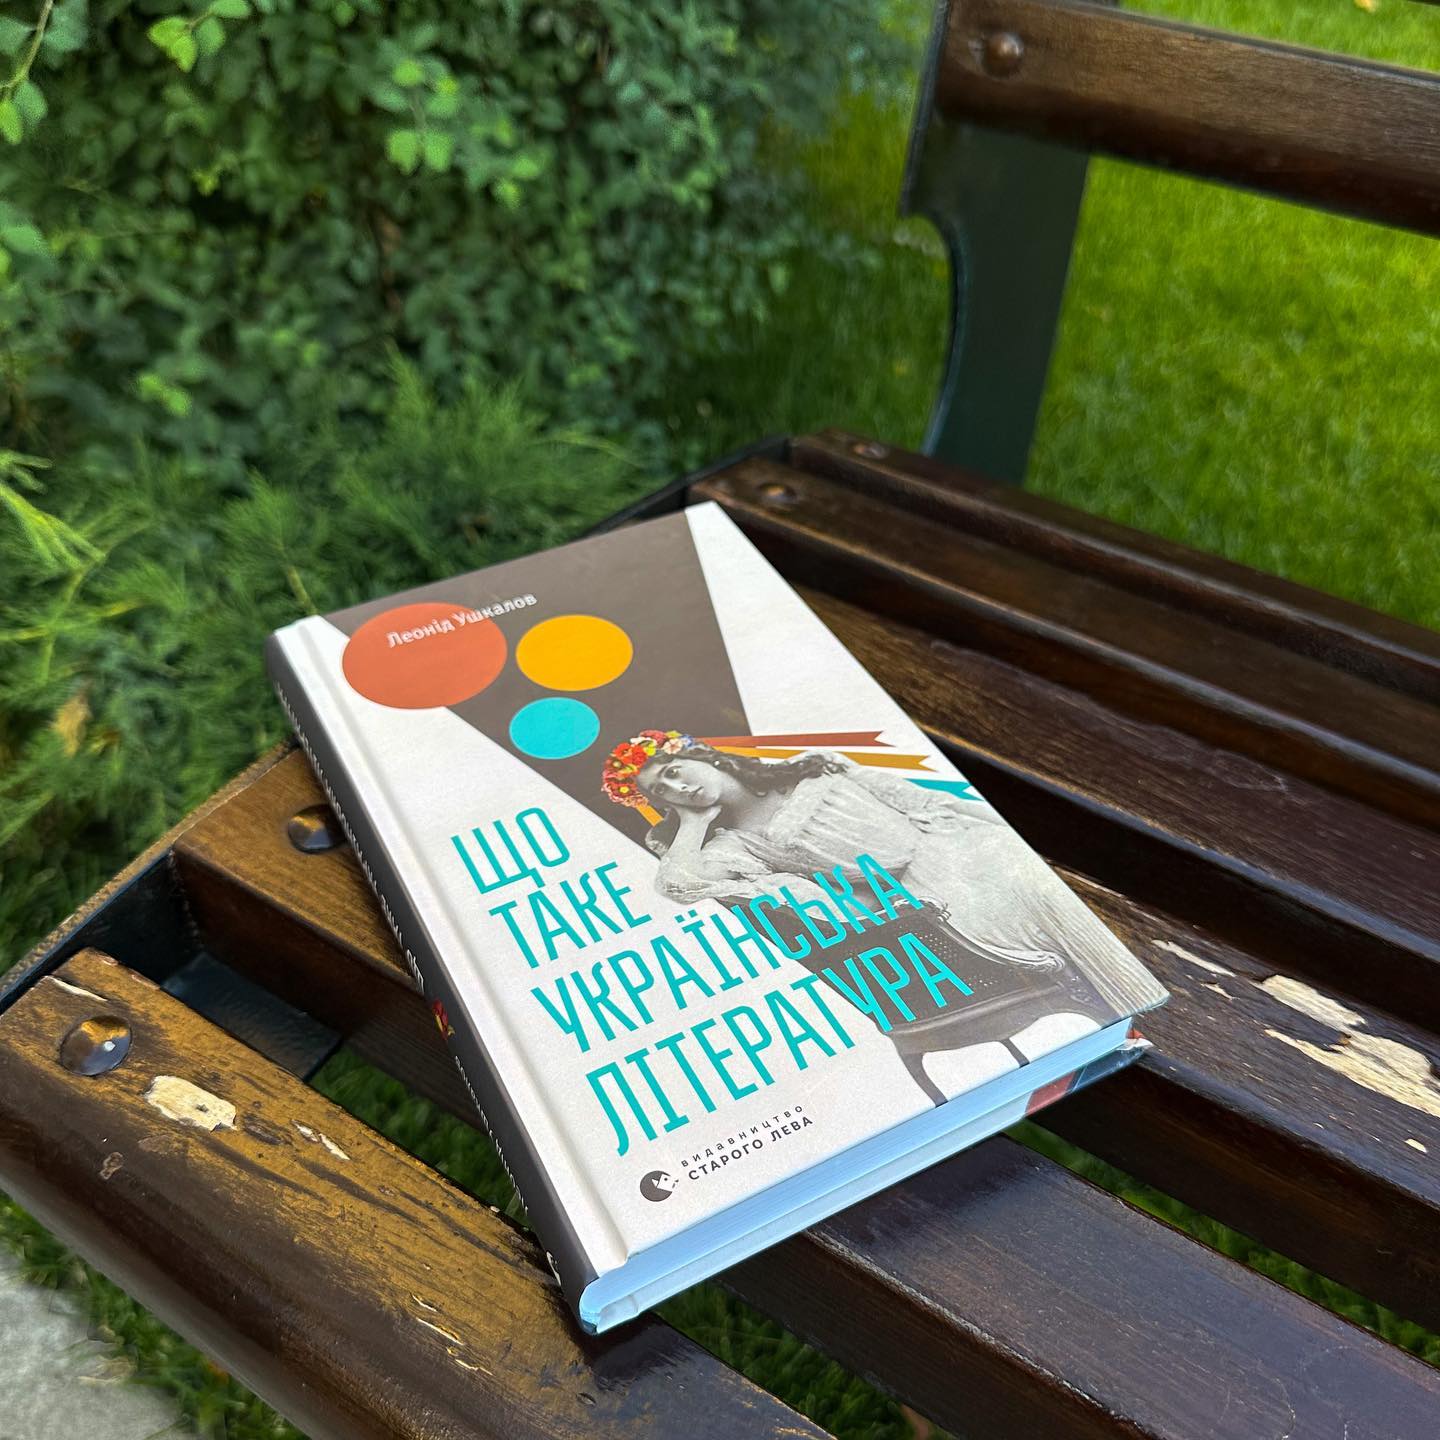 Книга "Що таке українська література" на лавоччі біля газону